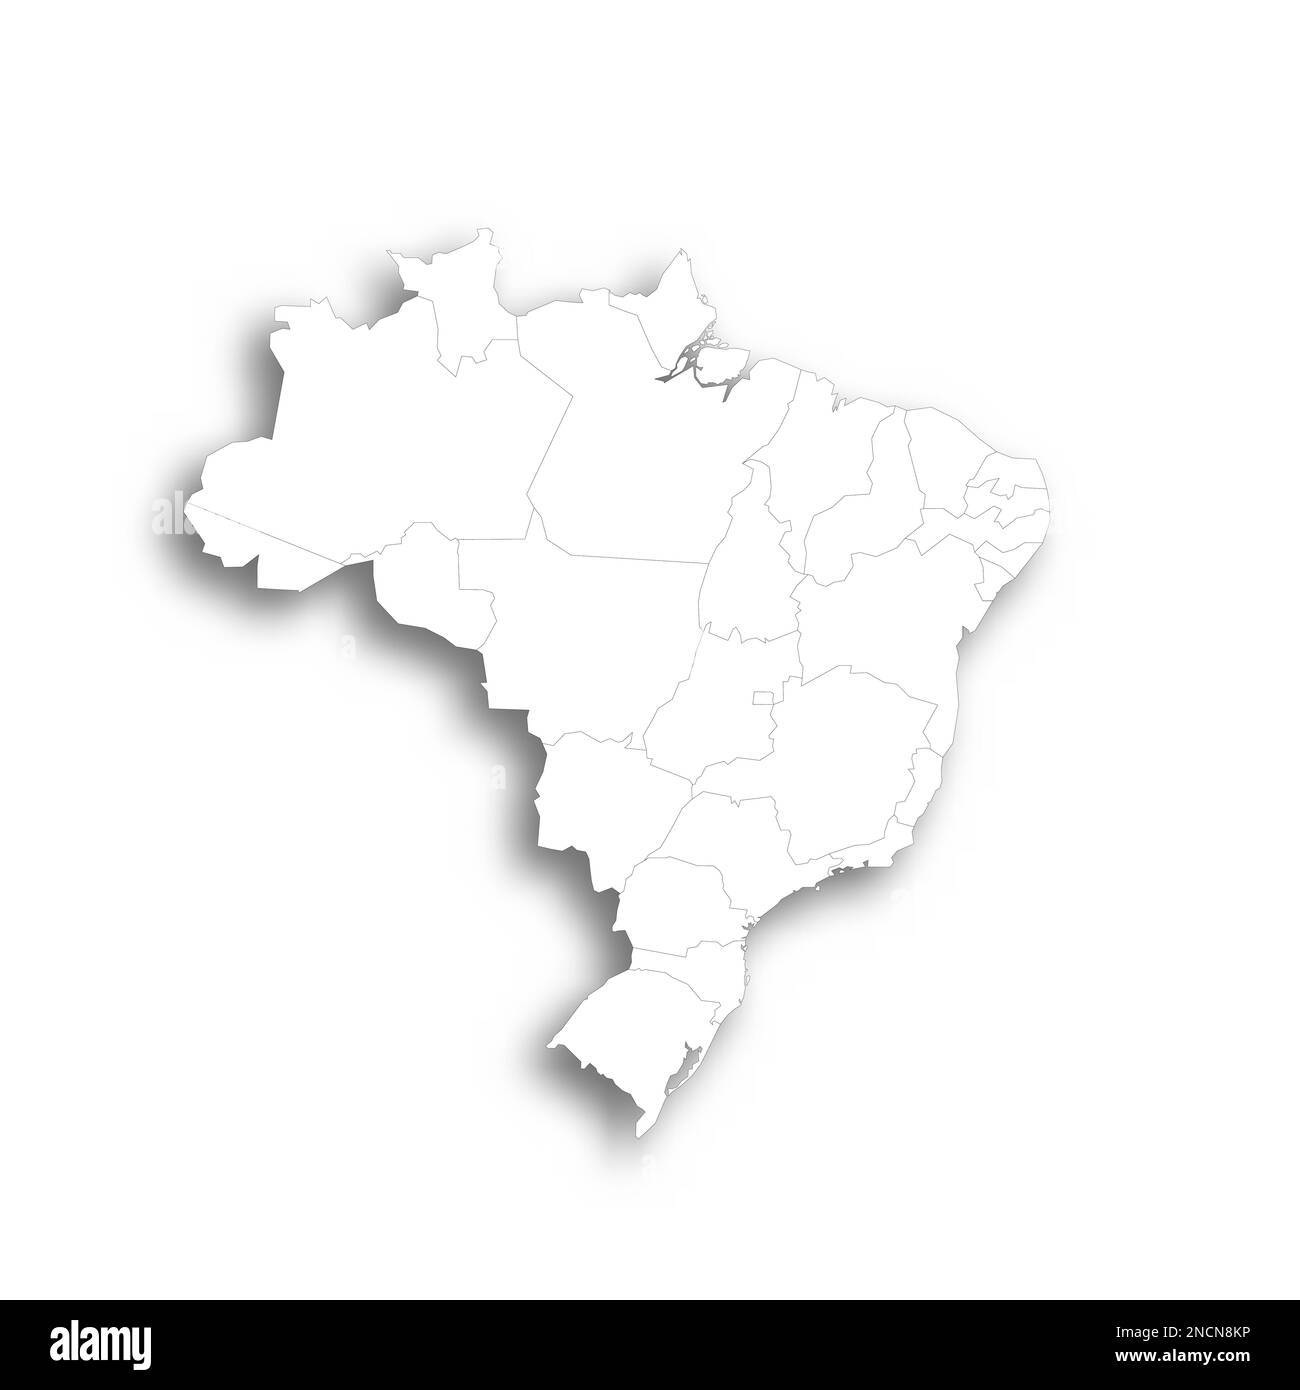 Politische Karte Brasiliens der Verwaltungsabteilungen - Föderative Einheiten Brasiliens. Flache weiße, leere Karte mit dünnem schwarzen Umriss und Schlagschatten. Stock Vektor